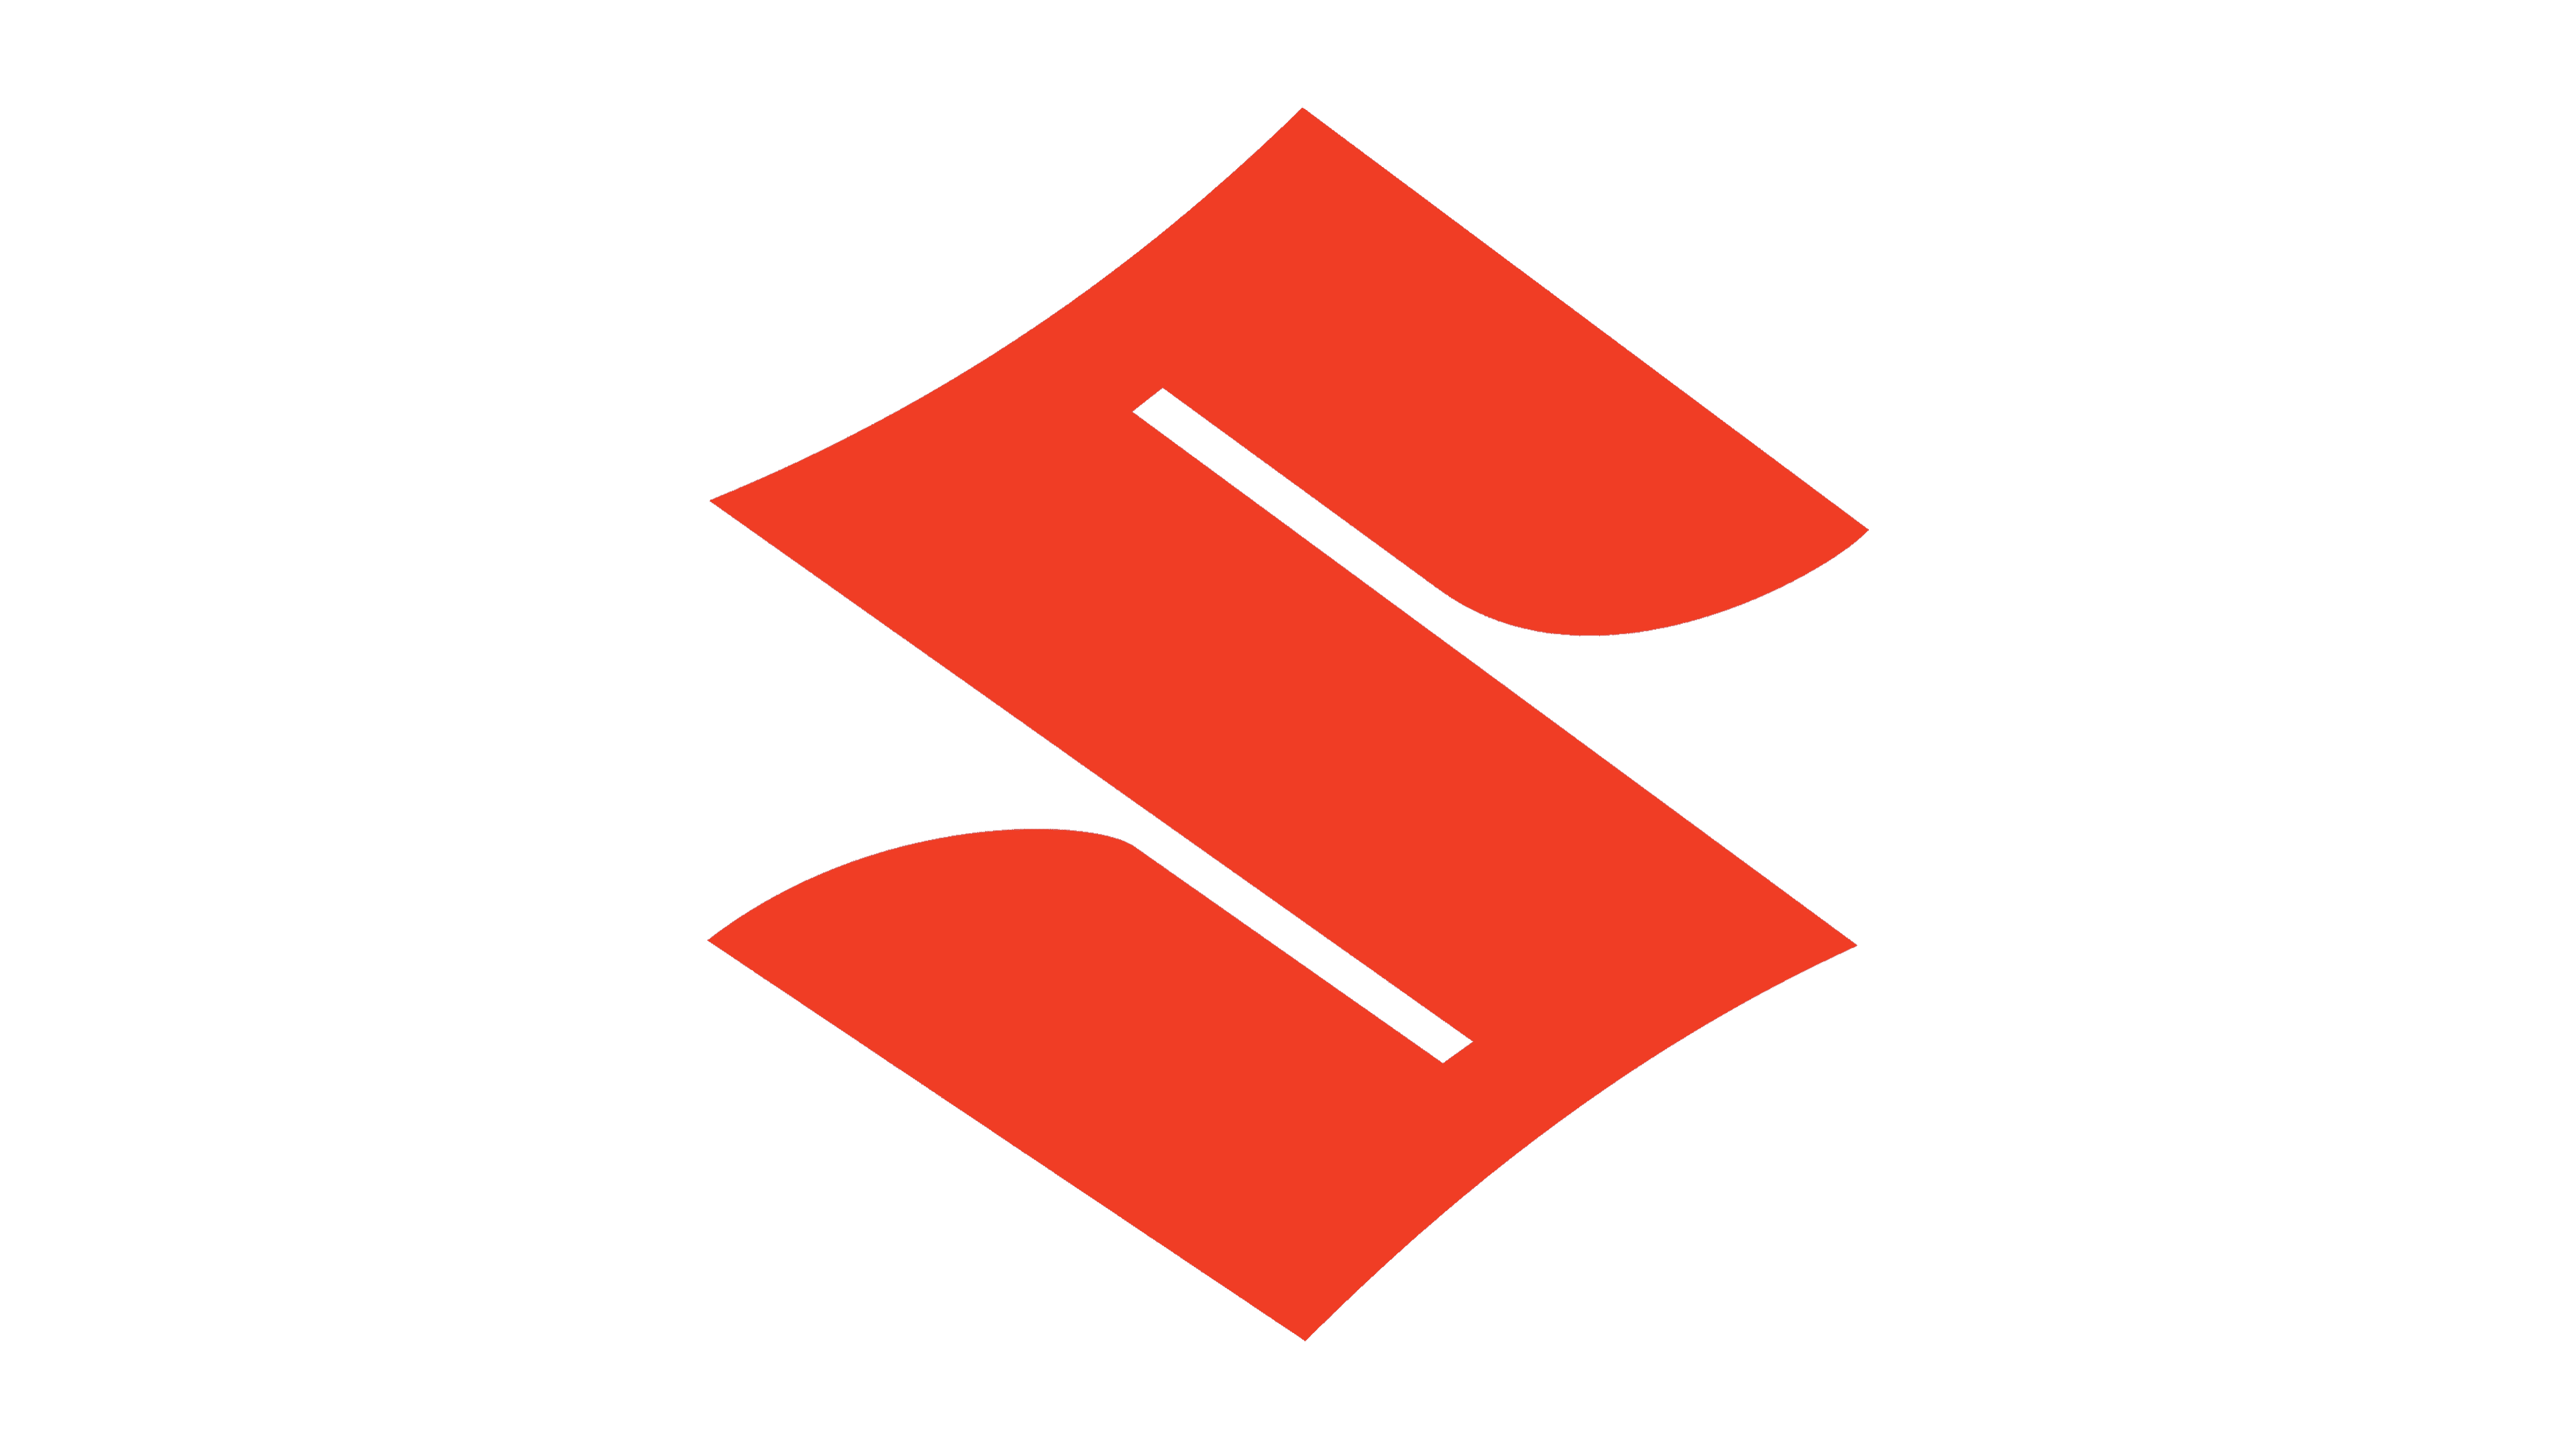 Download Logo Suzuki Free Download Image HQ PNG Image | FreePNGImg